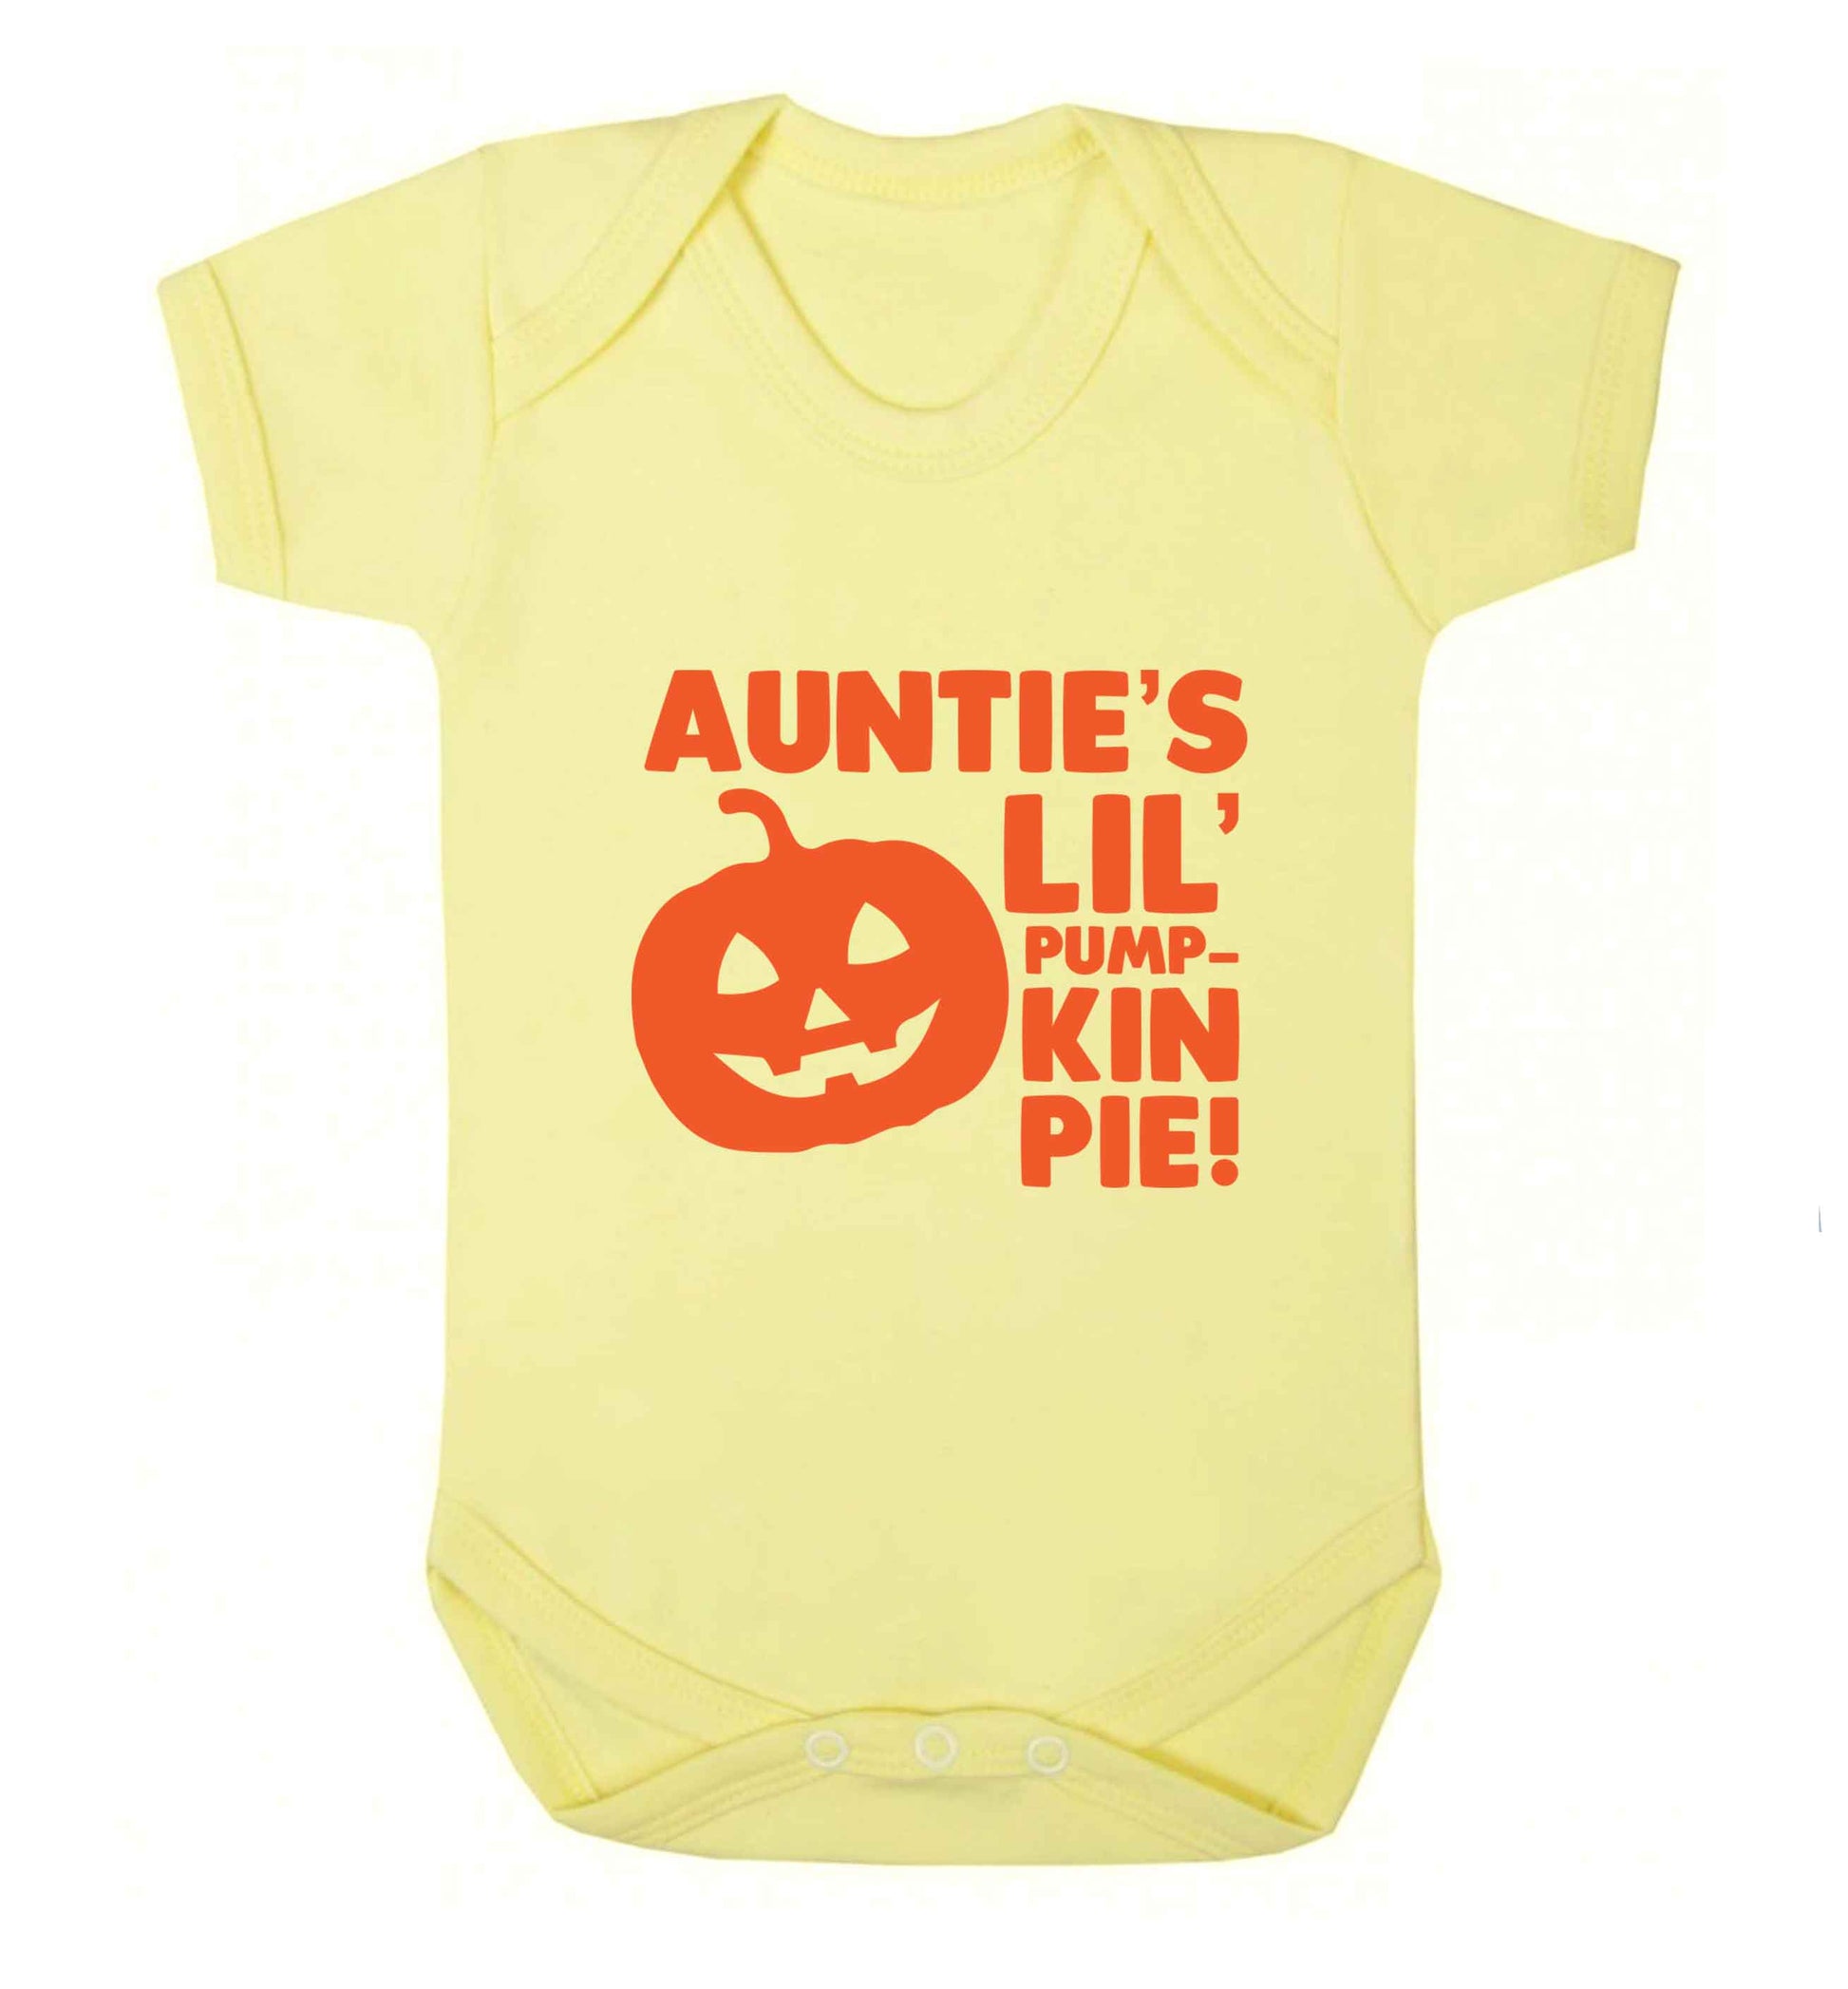 Auntie's lil' pumpkin pie baby vest pale yellow 18-24 months